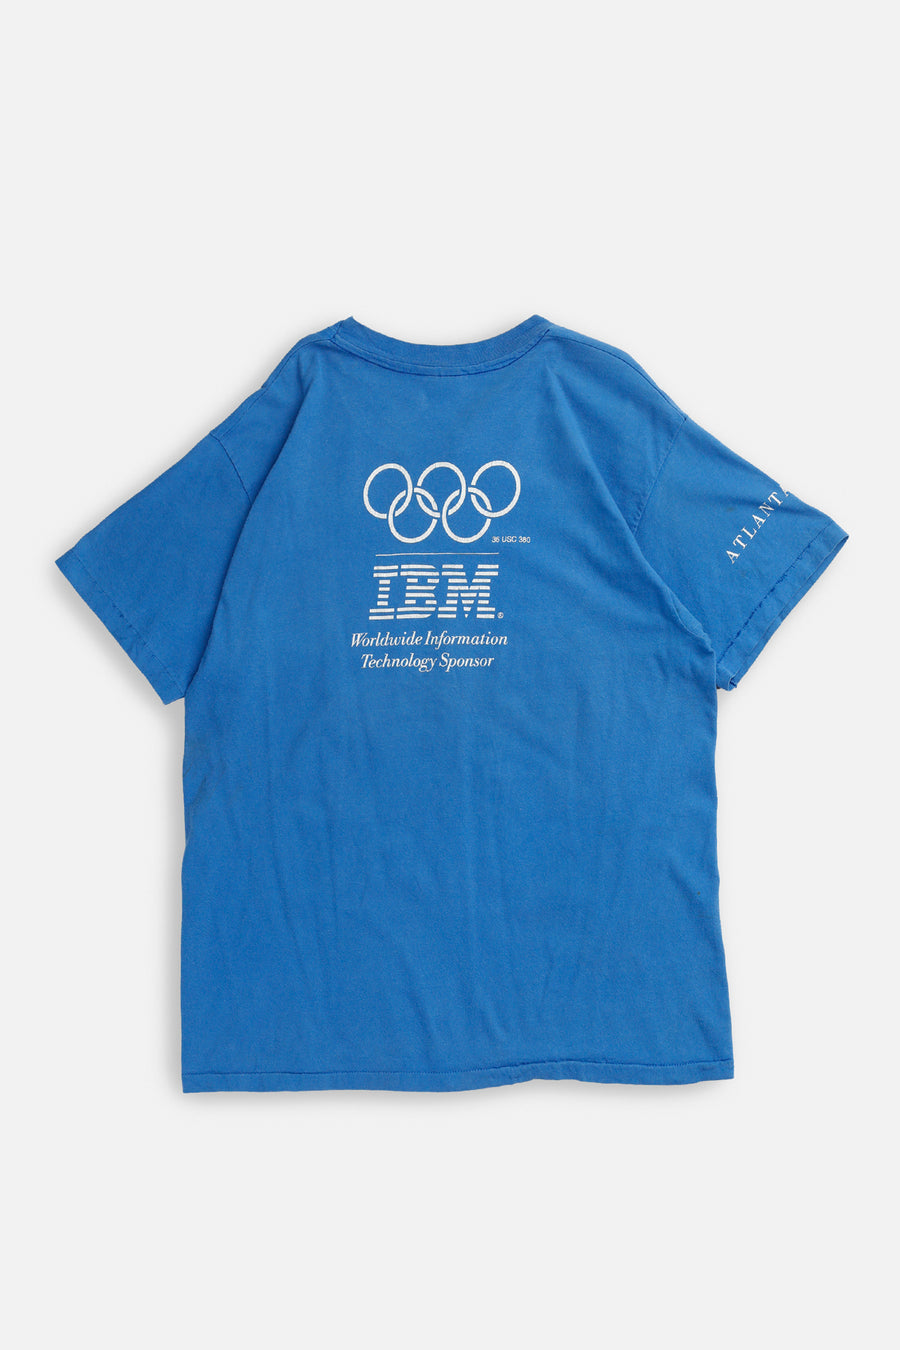 Vintage Olympics 1996 Tee - L